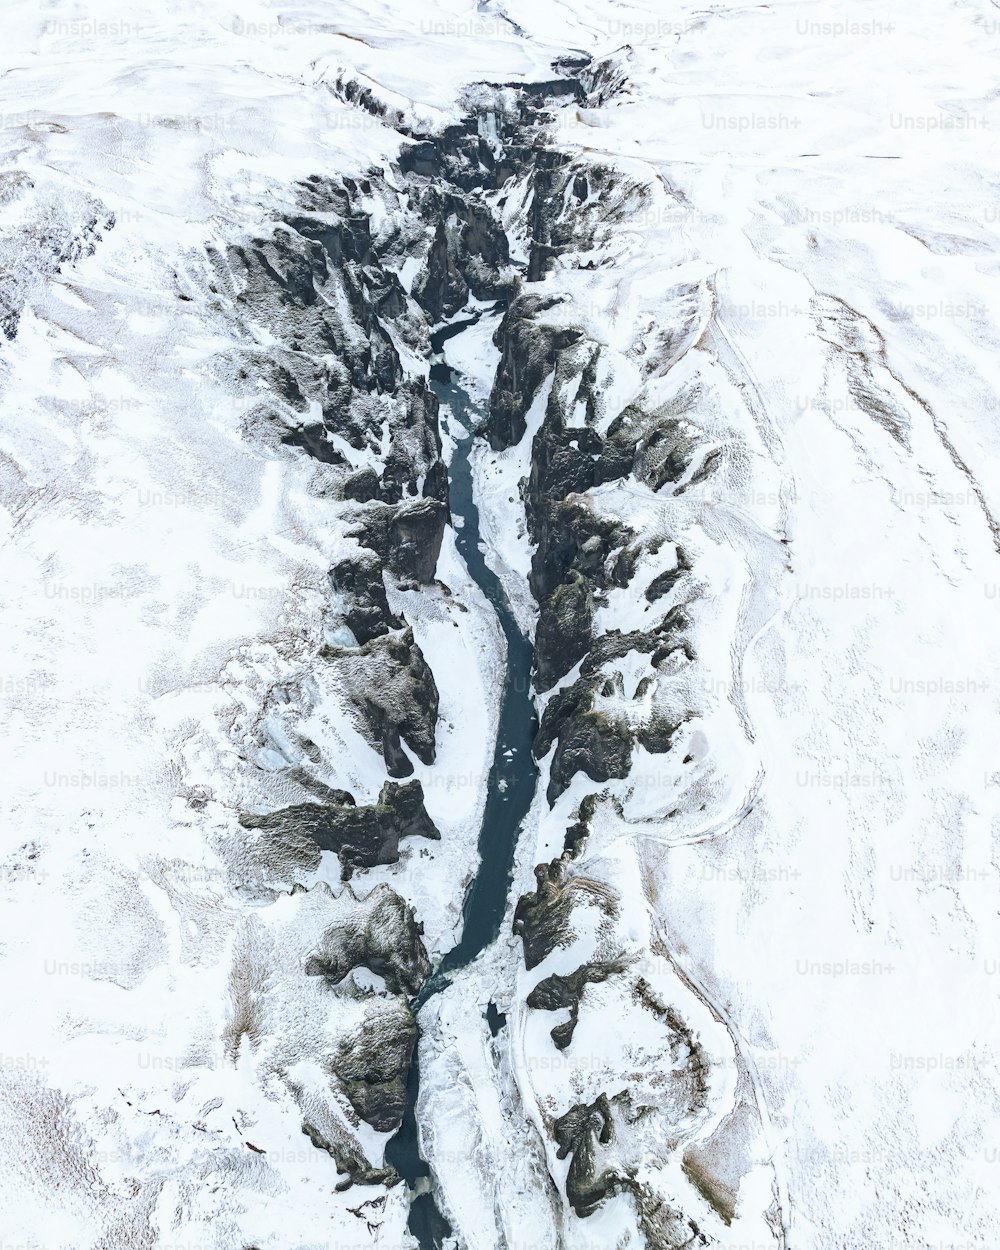 uma vista aérea de um rio que atravessa uma paisagem coberta de neve